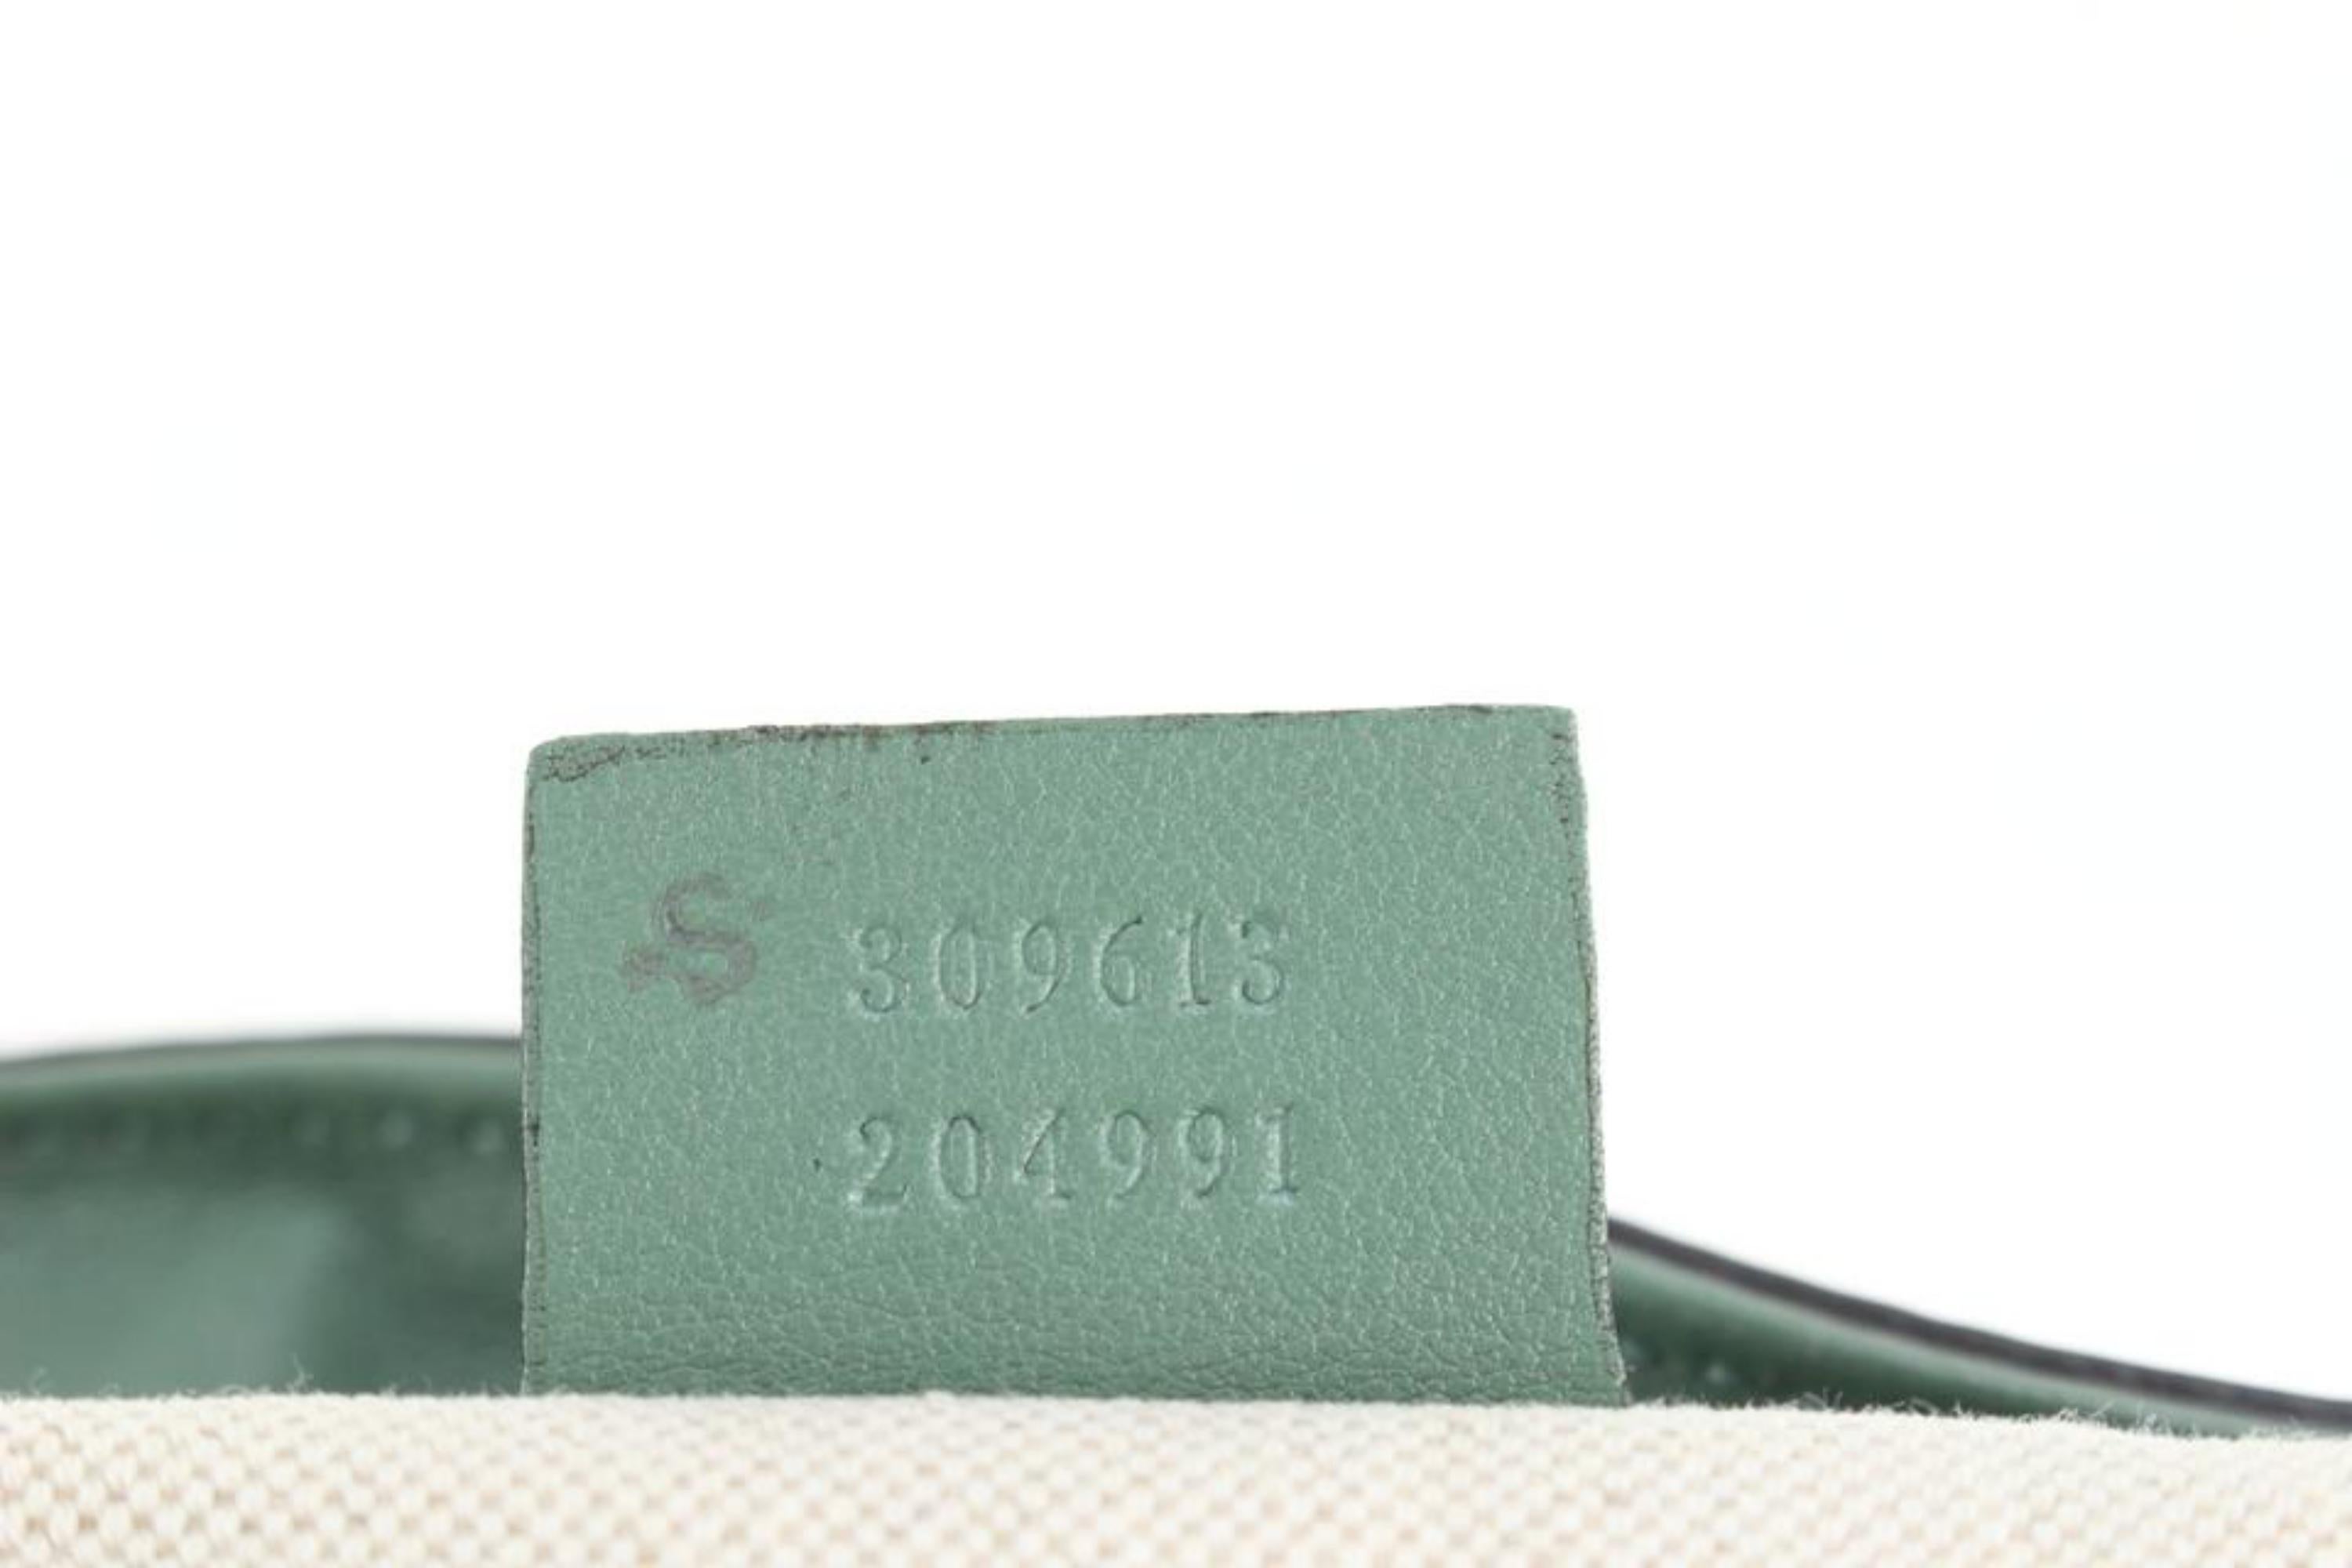 Gucci Green Patent Microguccissima Medium Nice Tote 59gk511s For Sale 5